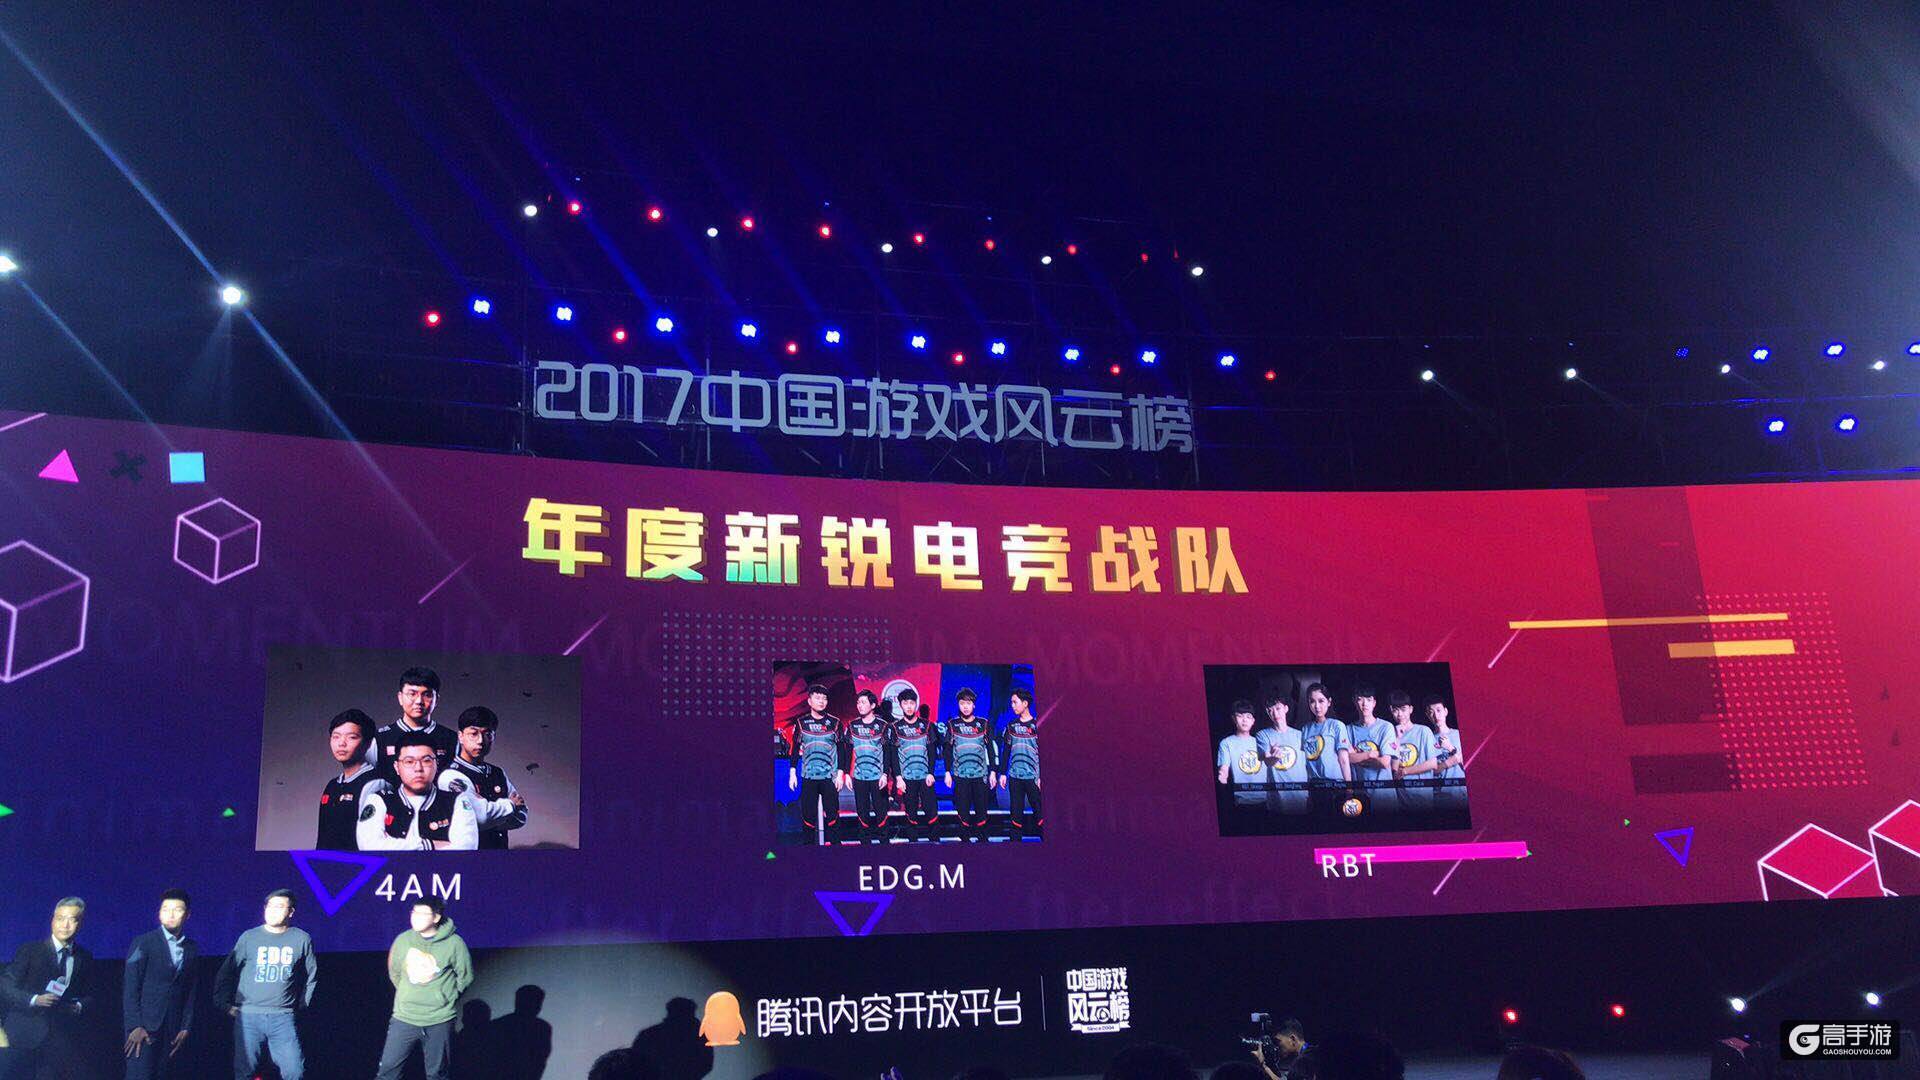 巨人网络荣获2017中国游戏风云榜3项大奖